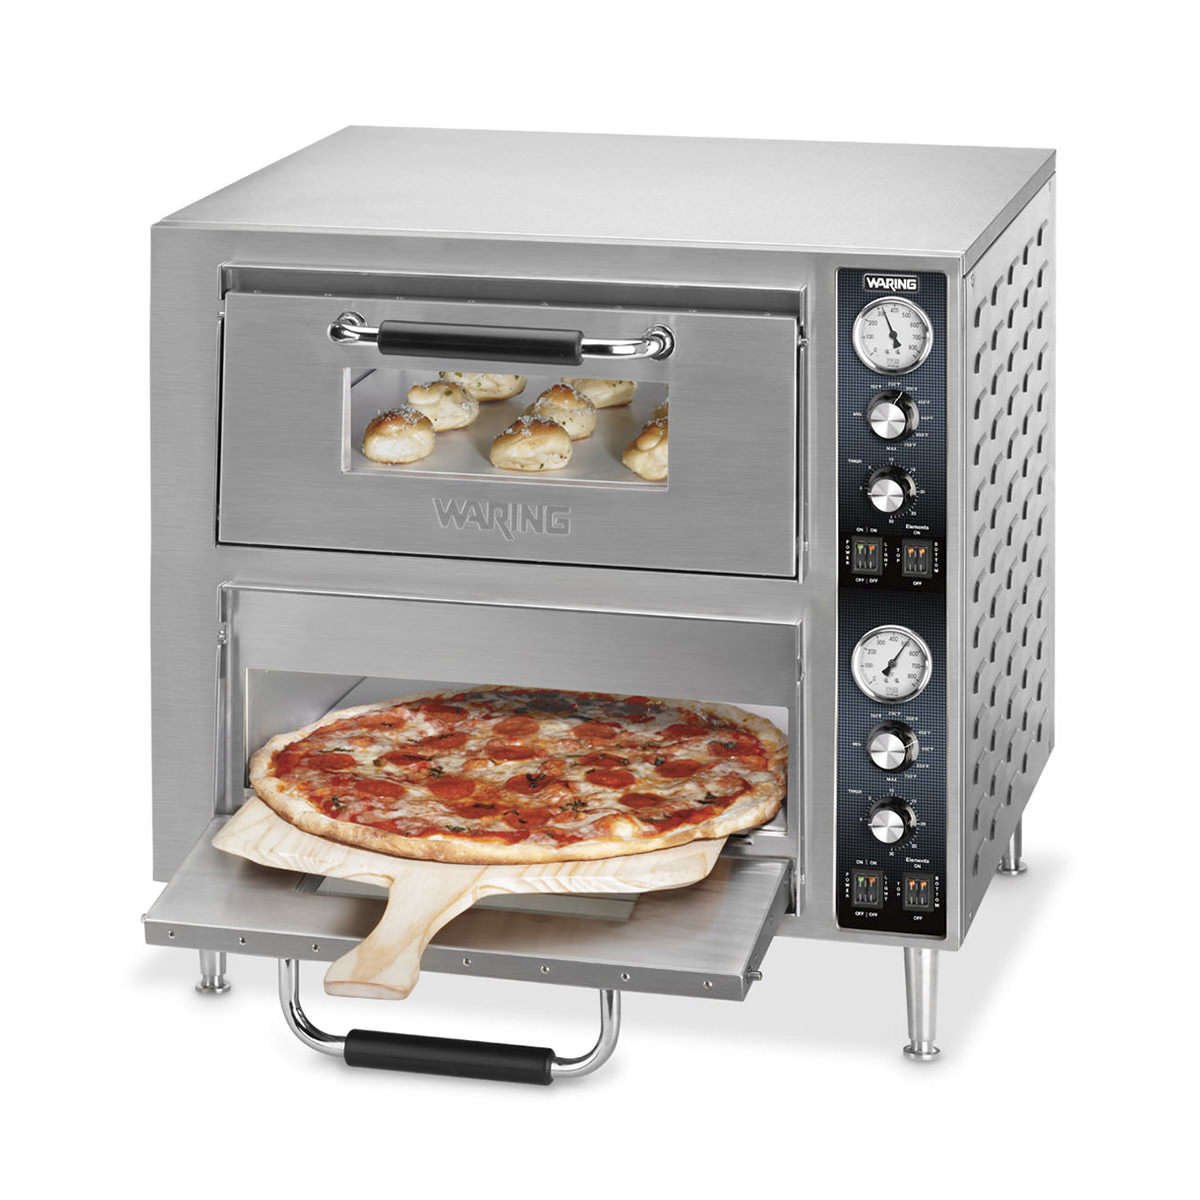 Купить духовку для пиццы. Waring wpo750 Double. Печка для пиццы. Печка для пиццы профессиональная. Печь для приготовления пиццы.